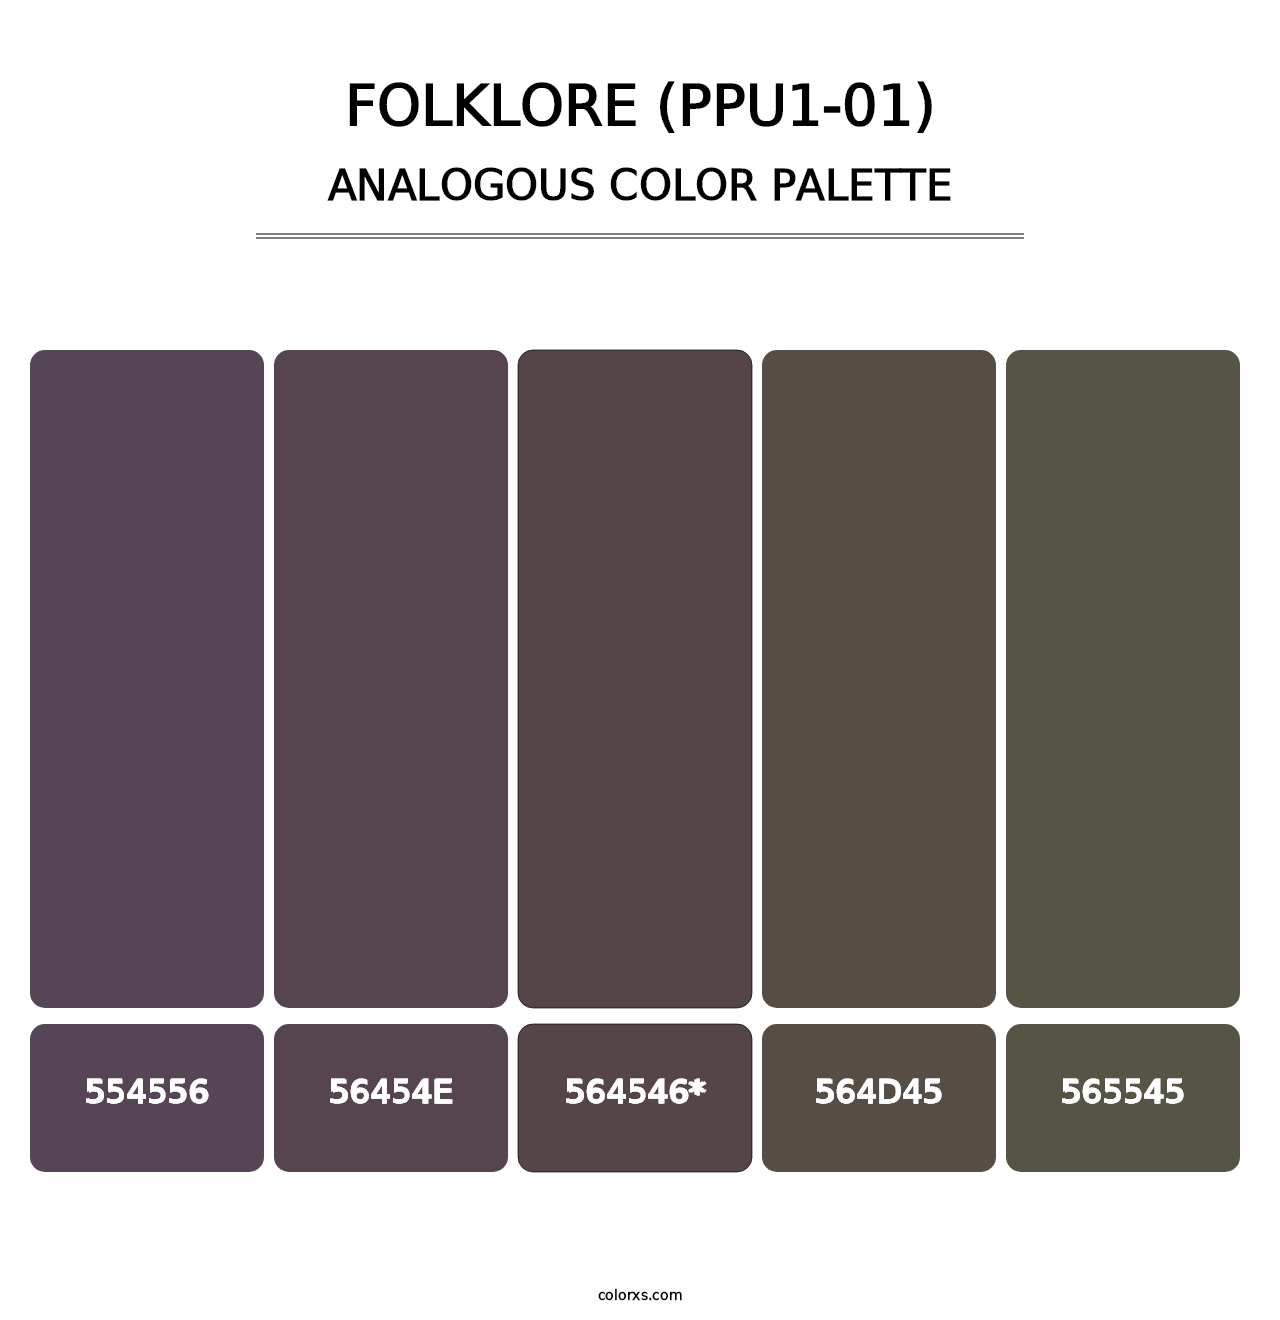 Folklore (PPU1-01) - Analogous Color Palette